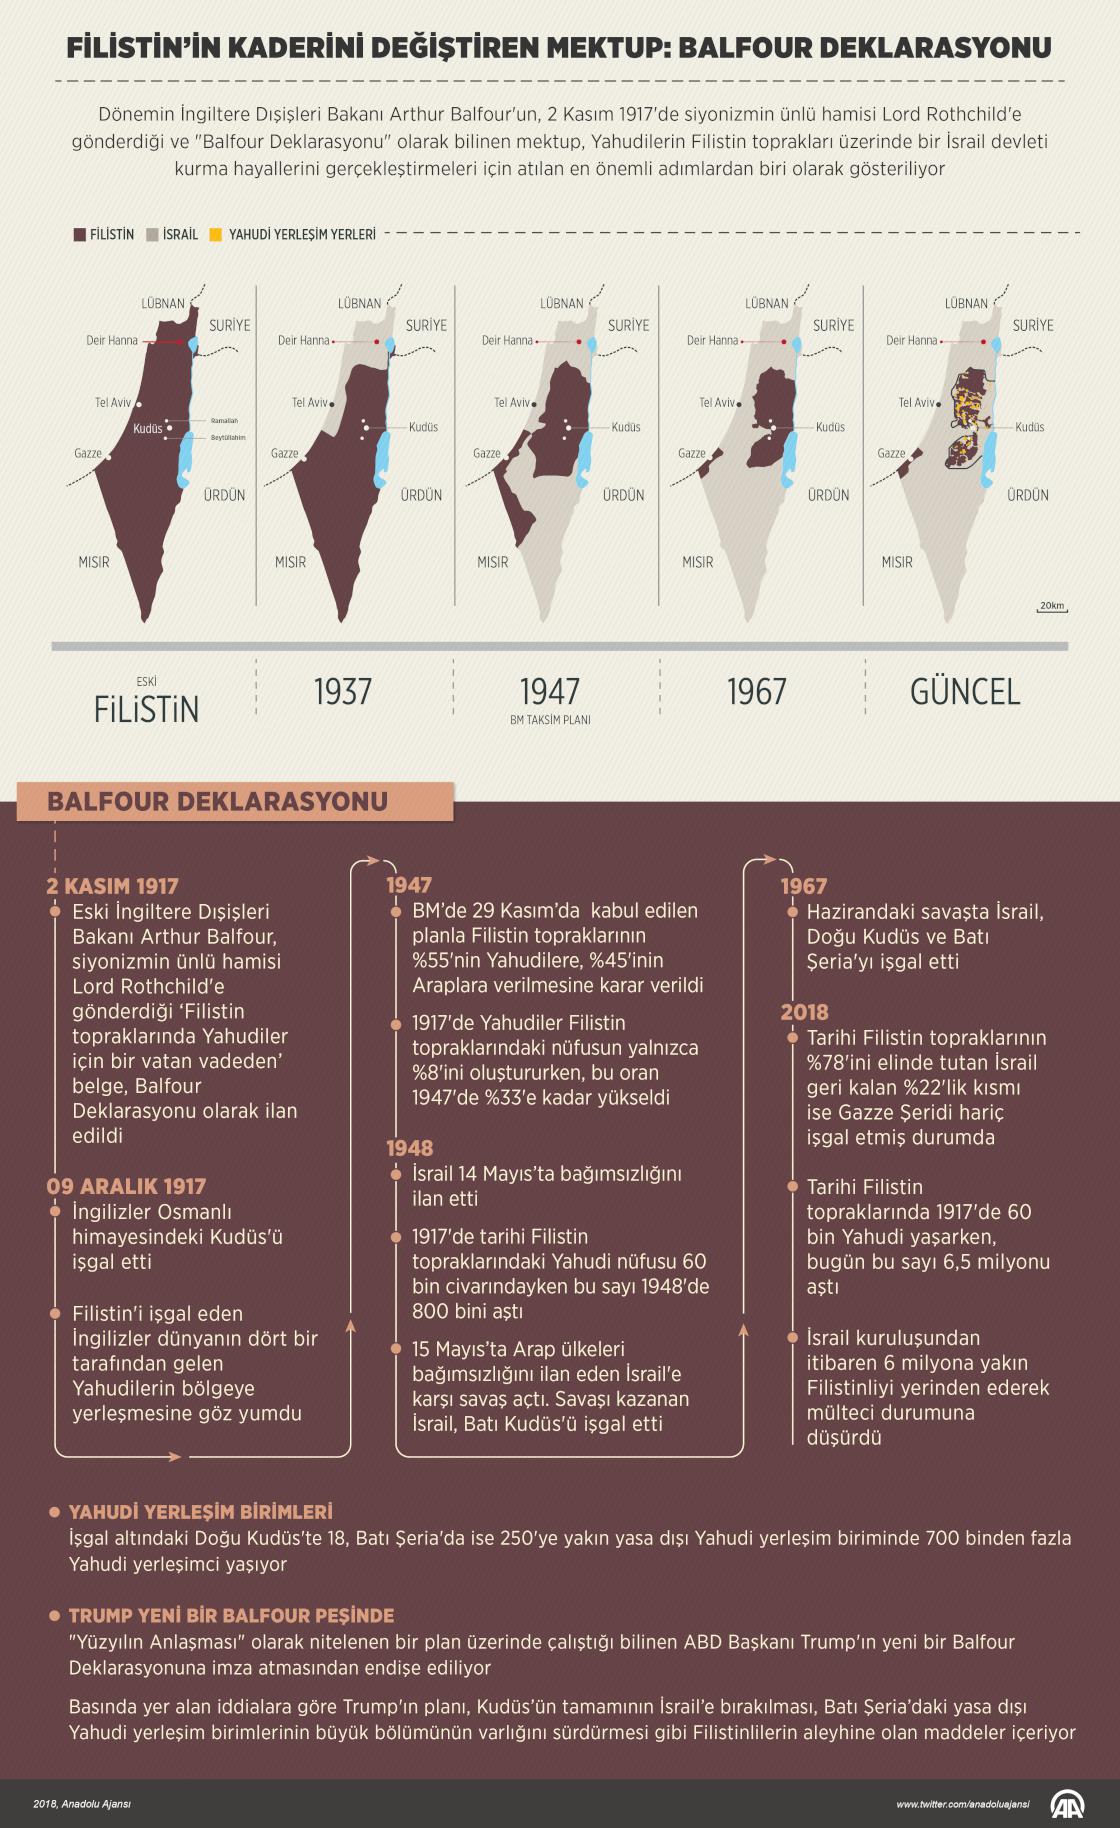 Filistin’in kaderini değiştiren mektup: Balfour Deklarasyonu